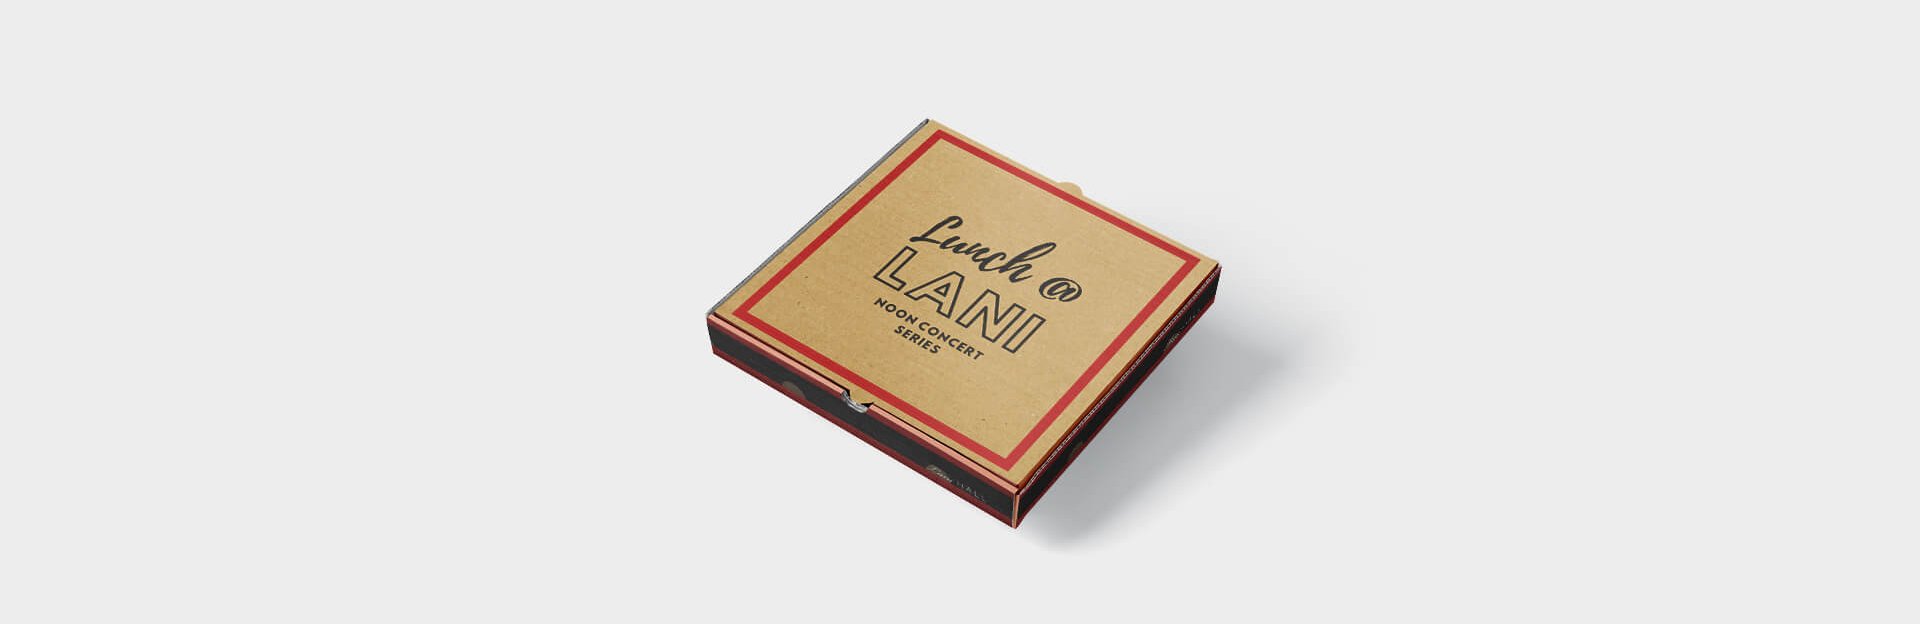 LUNCH @ LANI Pizza Box